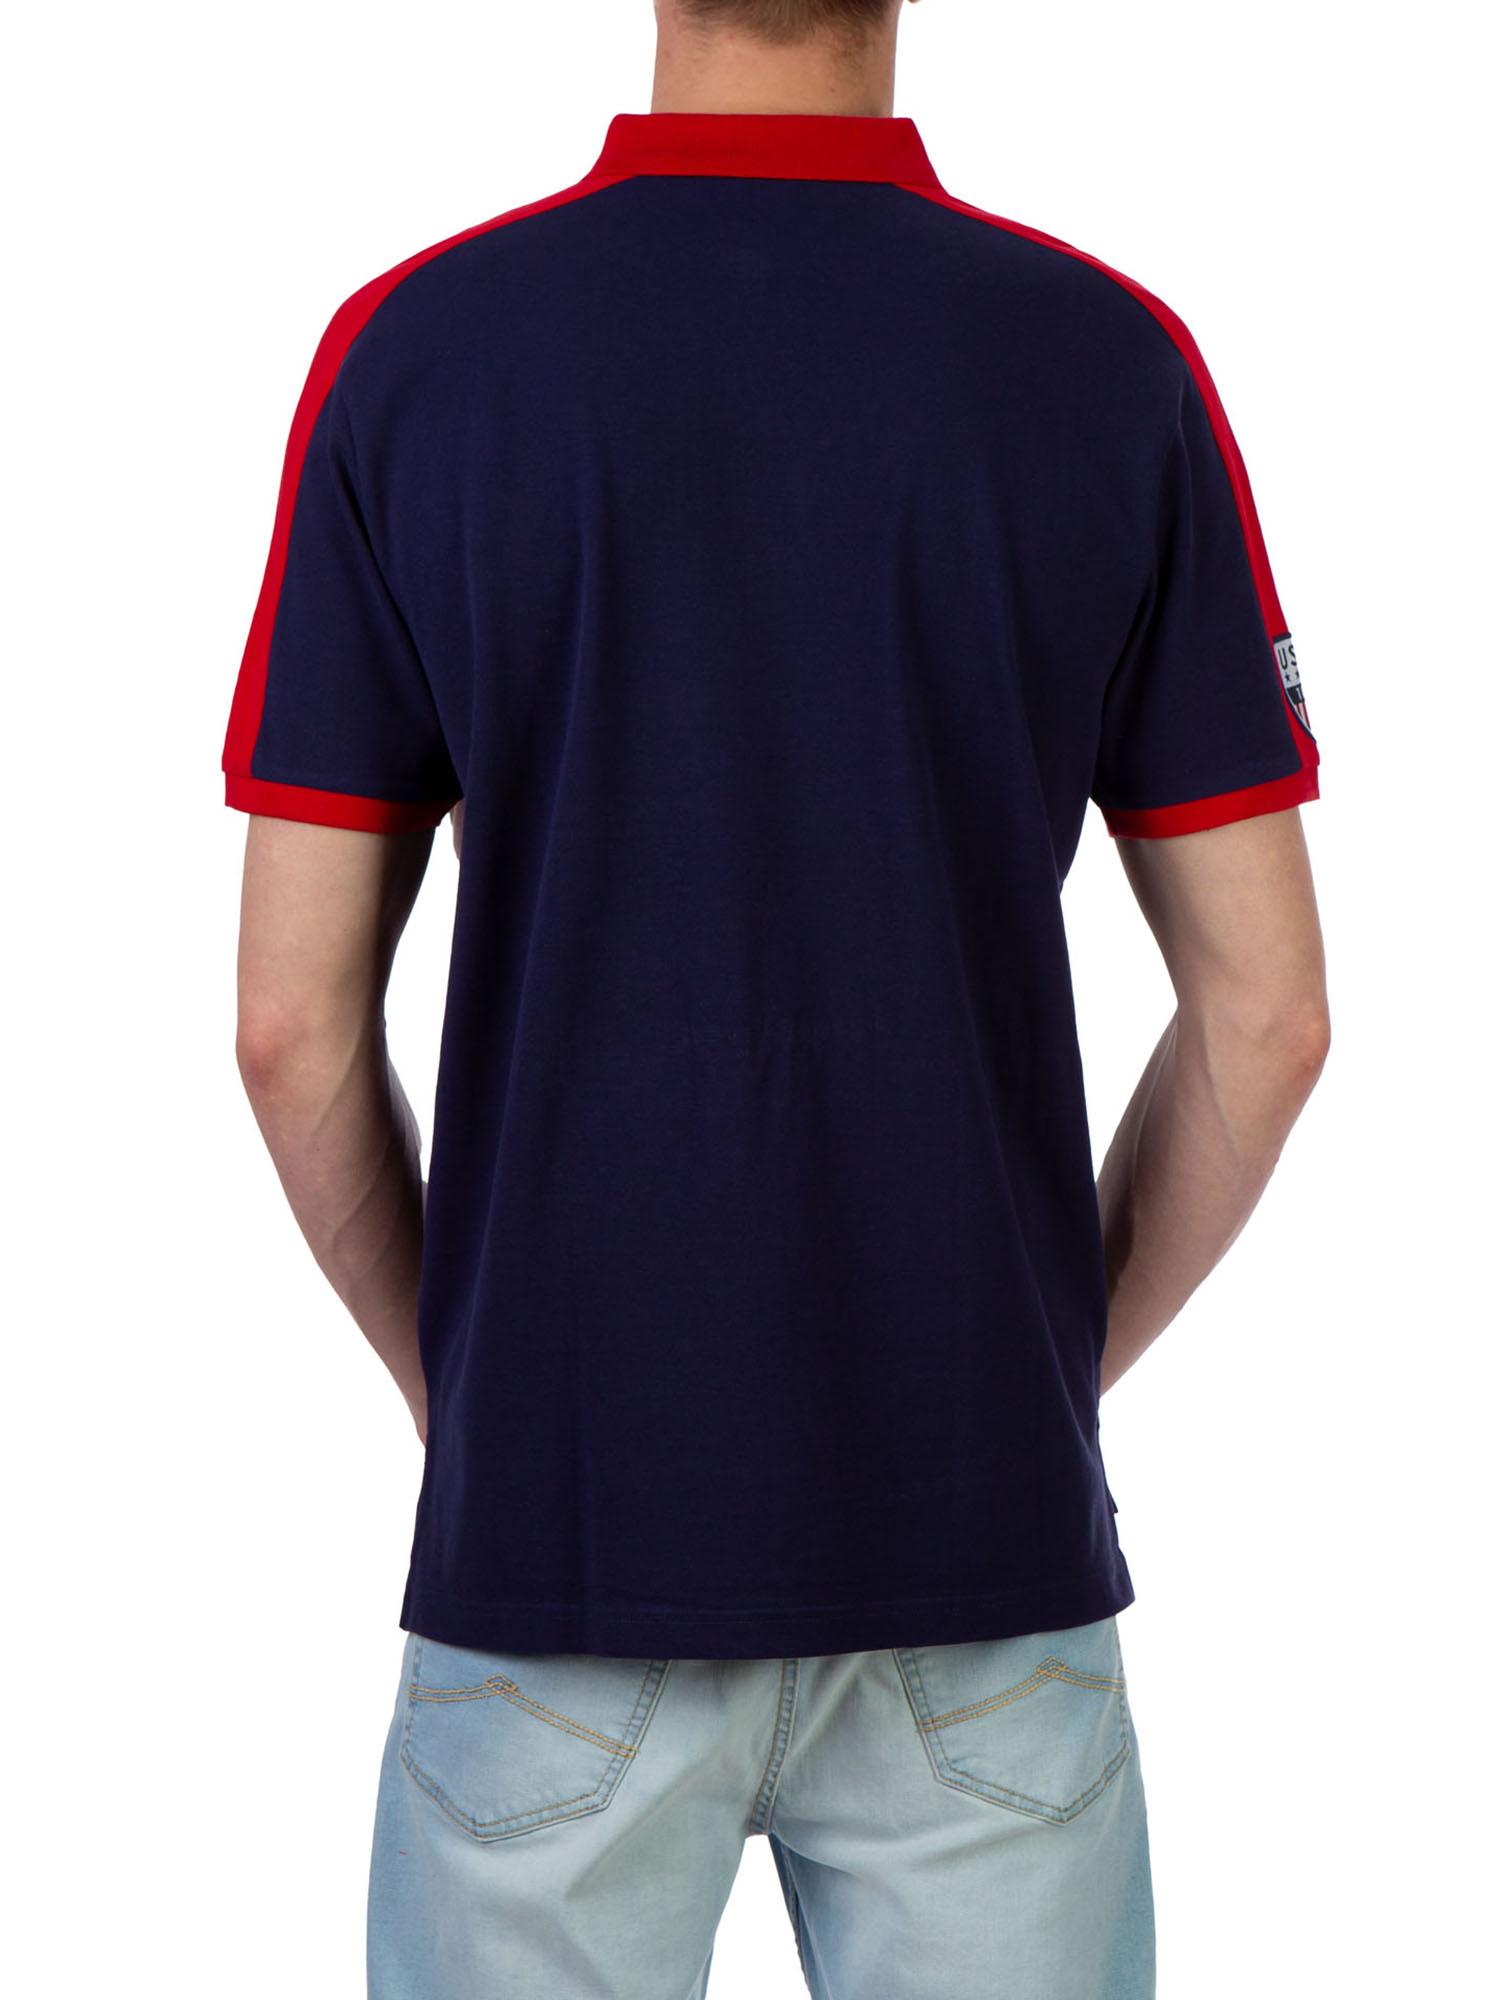 U.S. Polo Assn. Men's Color Block Pique Polo Shirt - image 3 of 3